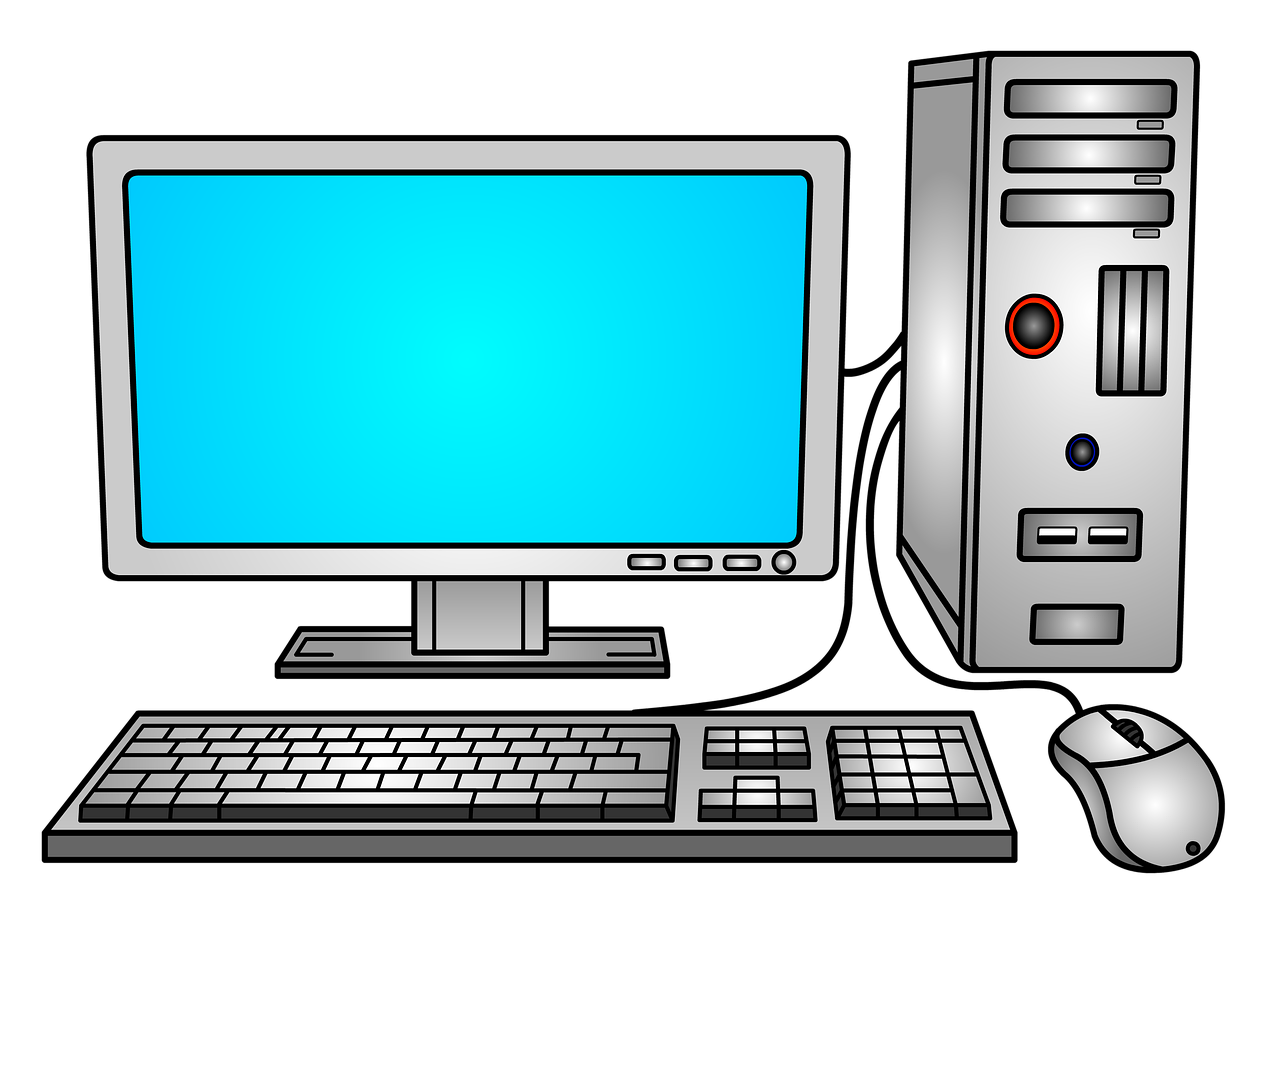 Картинка компьютера. Персональный компьютер. Векторное изображение компьютера. Компьютер иллюстрация. Компьютер клипарт.